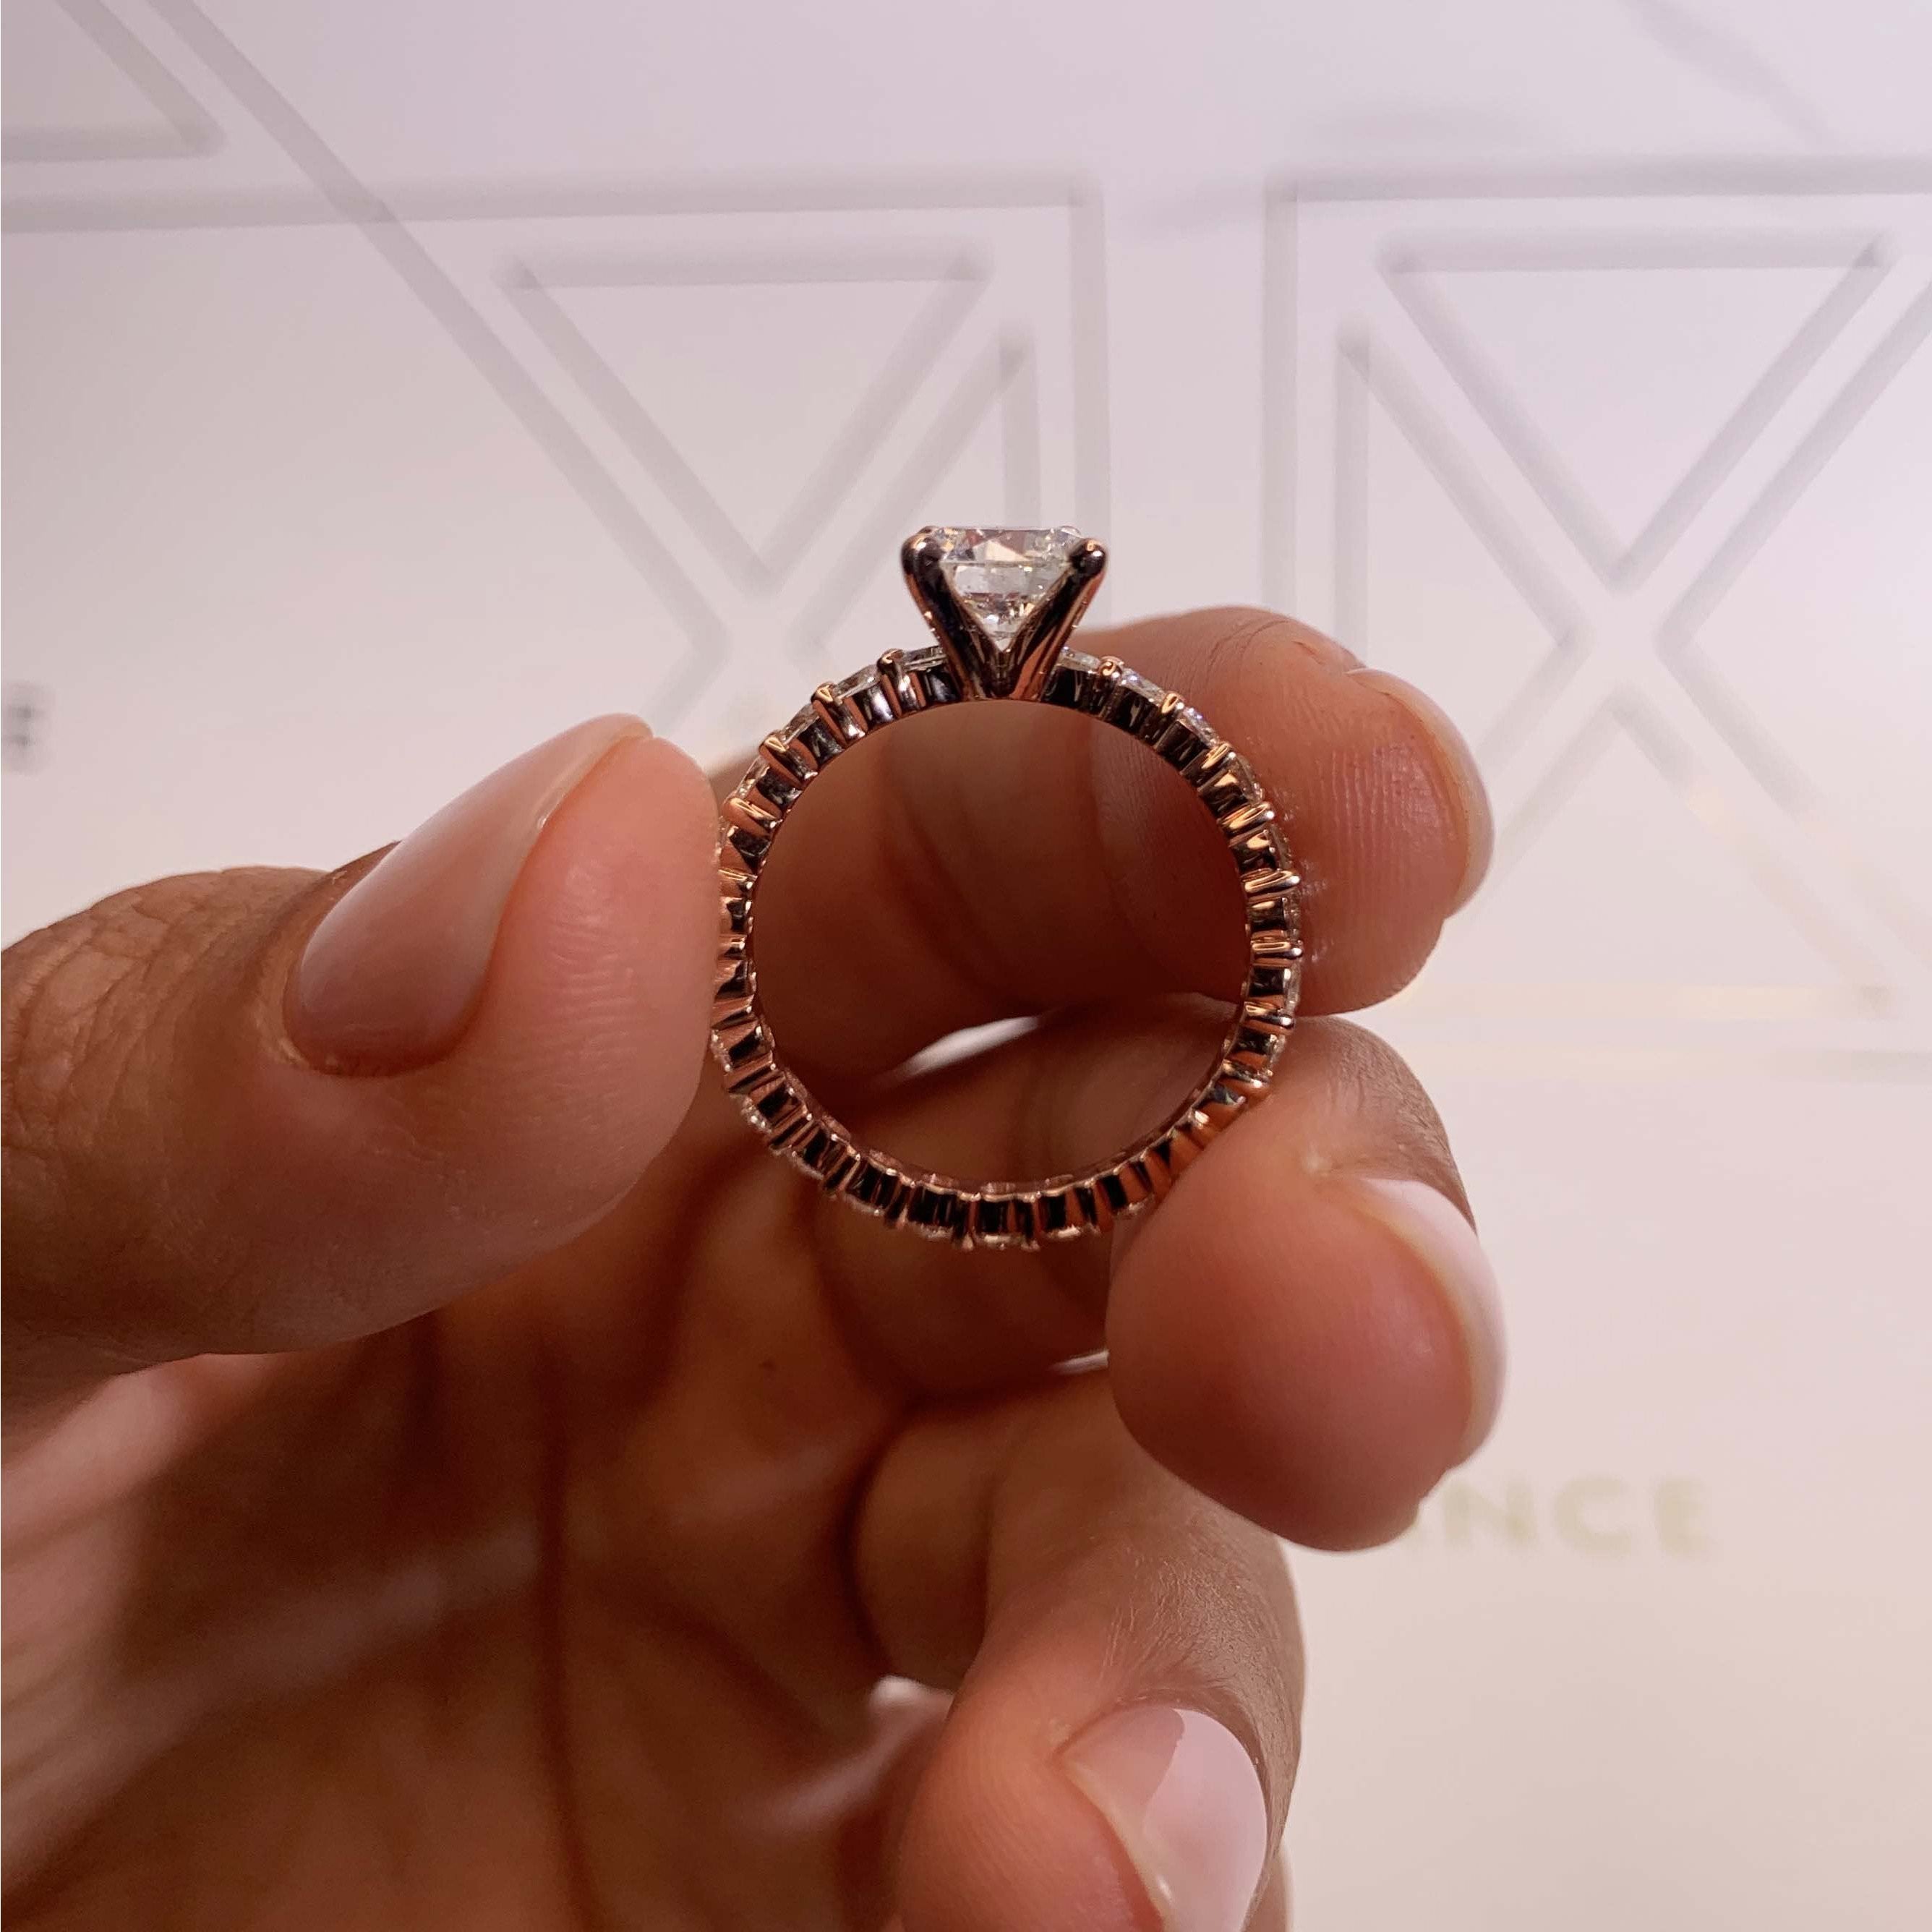 Jenna Diamond Engagement Ring   (2 Carat) -14K Rose Gold